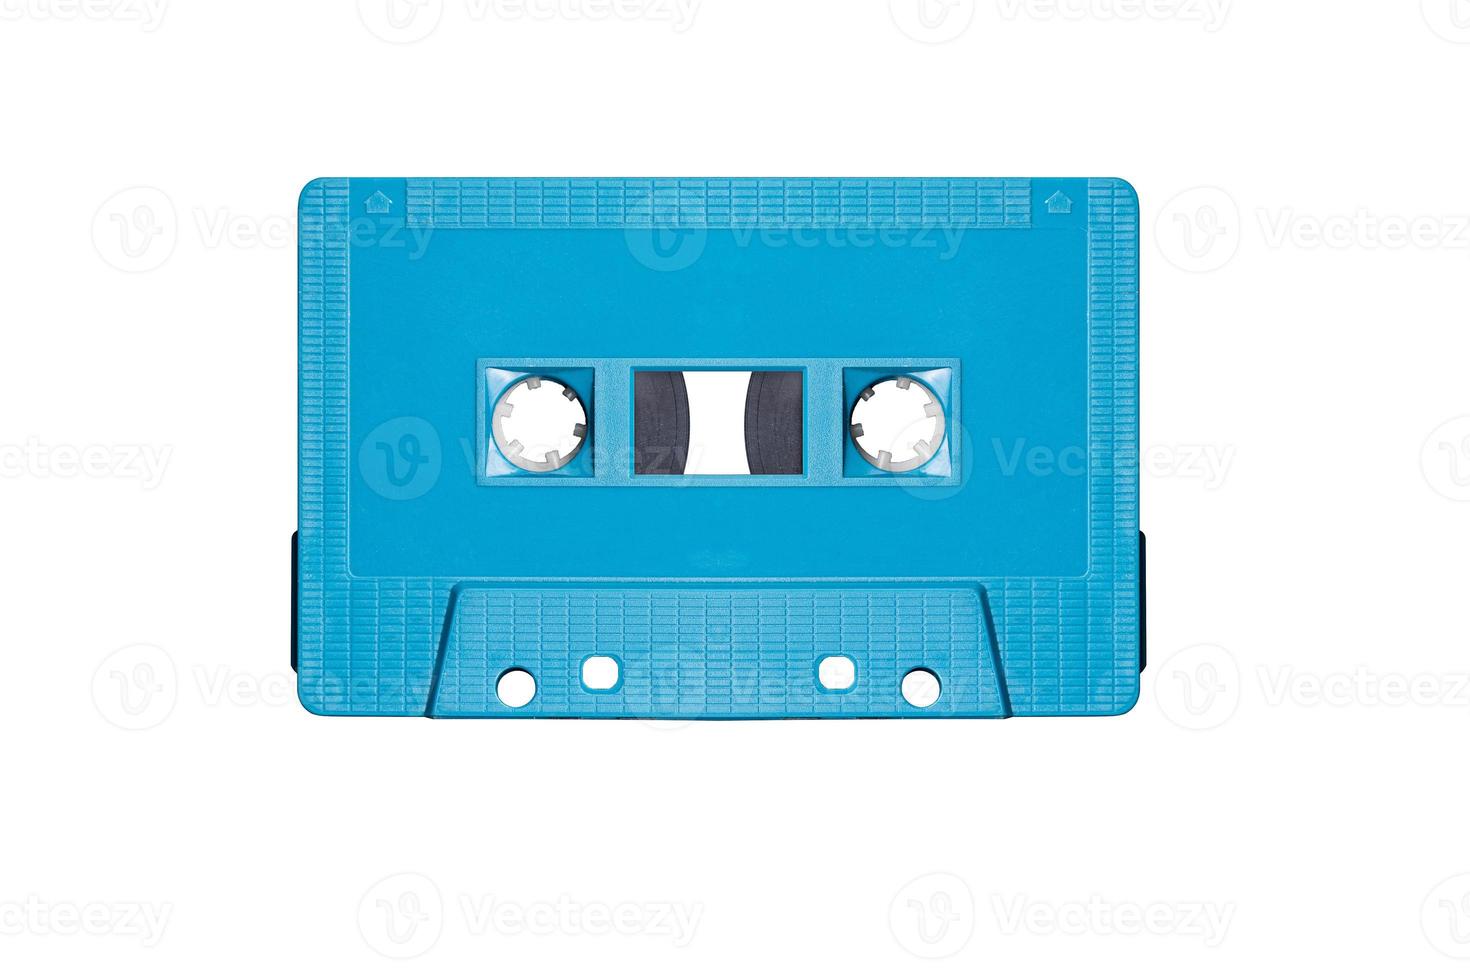 fita cassete mock up retrô azul isolada no fundo branco com traçado de recorte foto